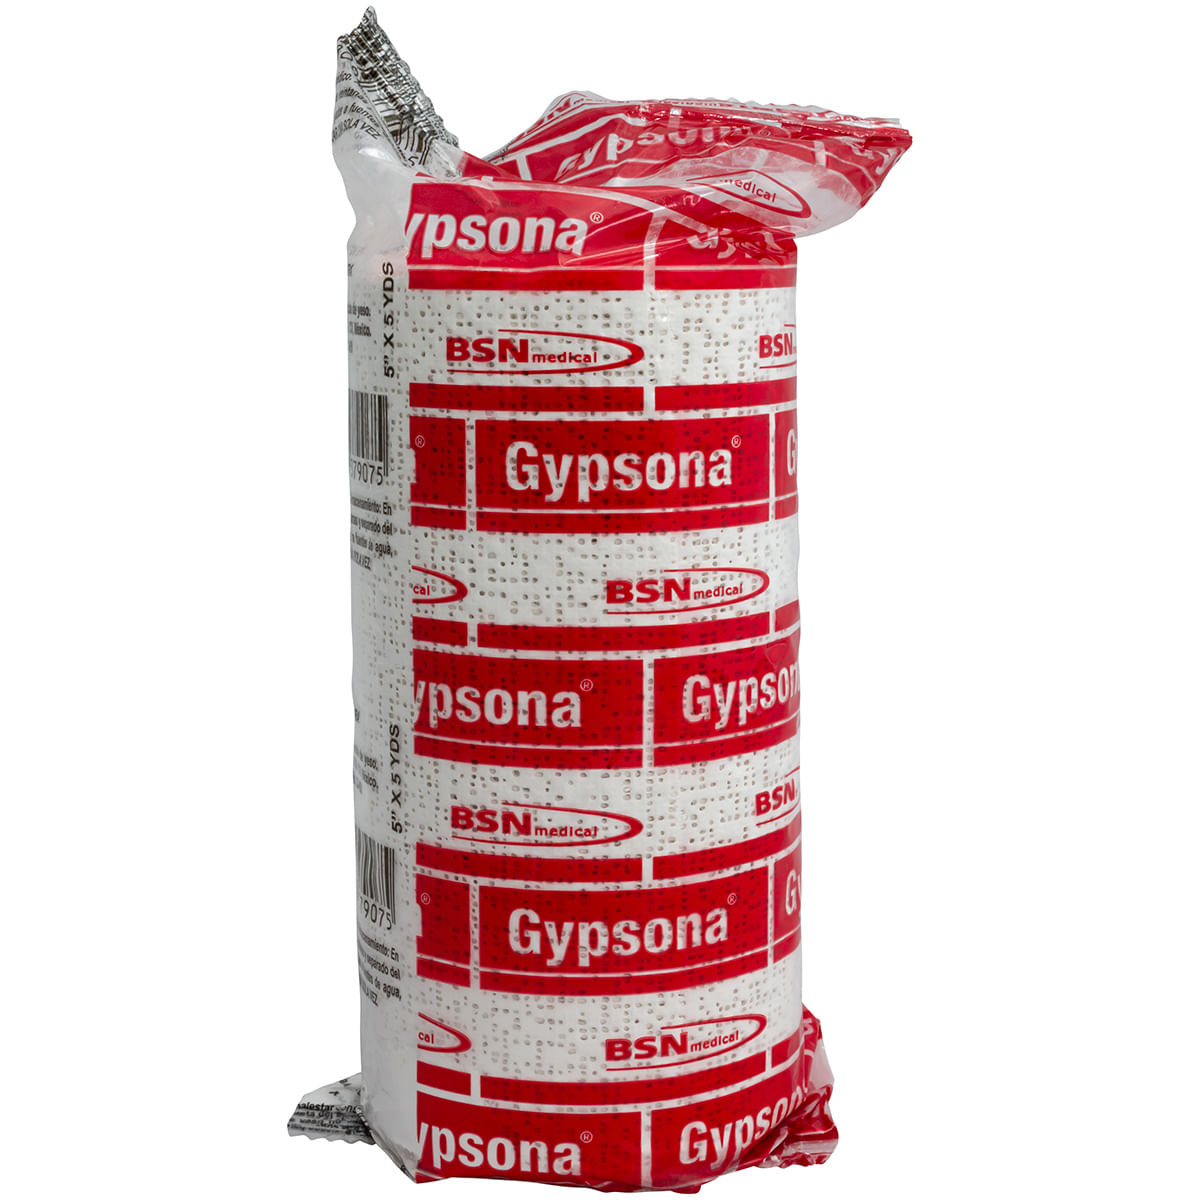 Venda yeso gypsona (15 cms x 3 mts) – Codimed Soluciones en Salud –  Concepcion – Santiago – Puerto Montt